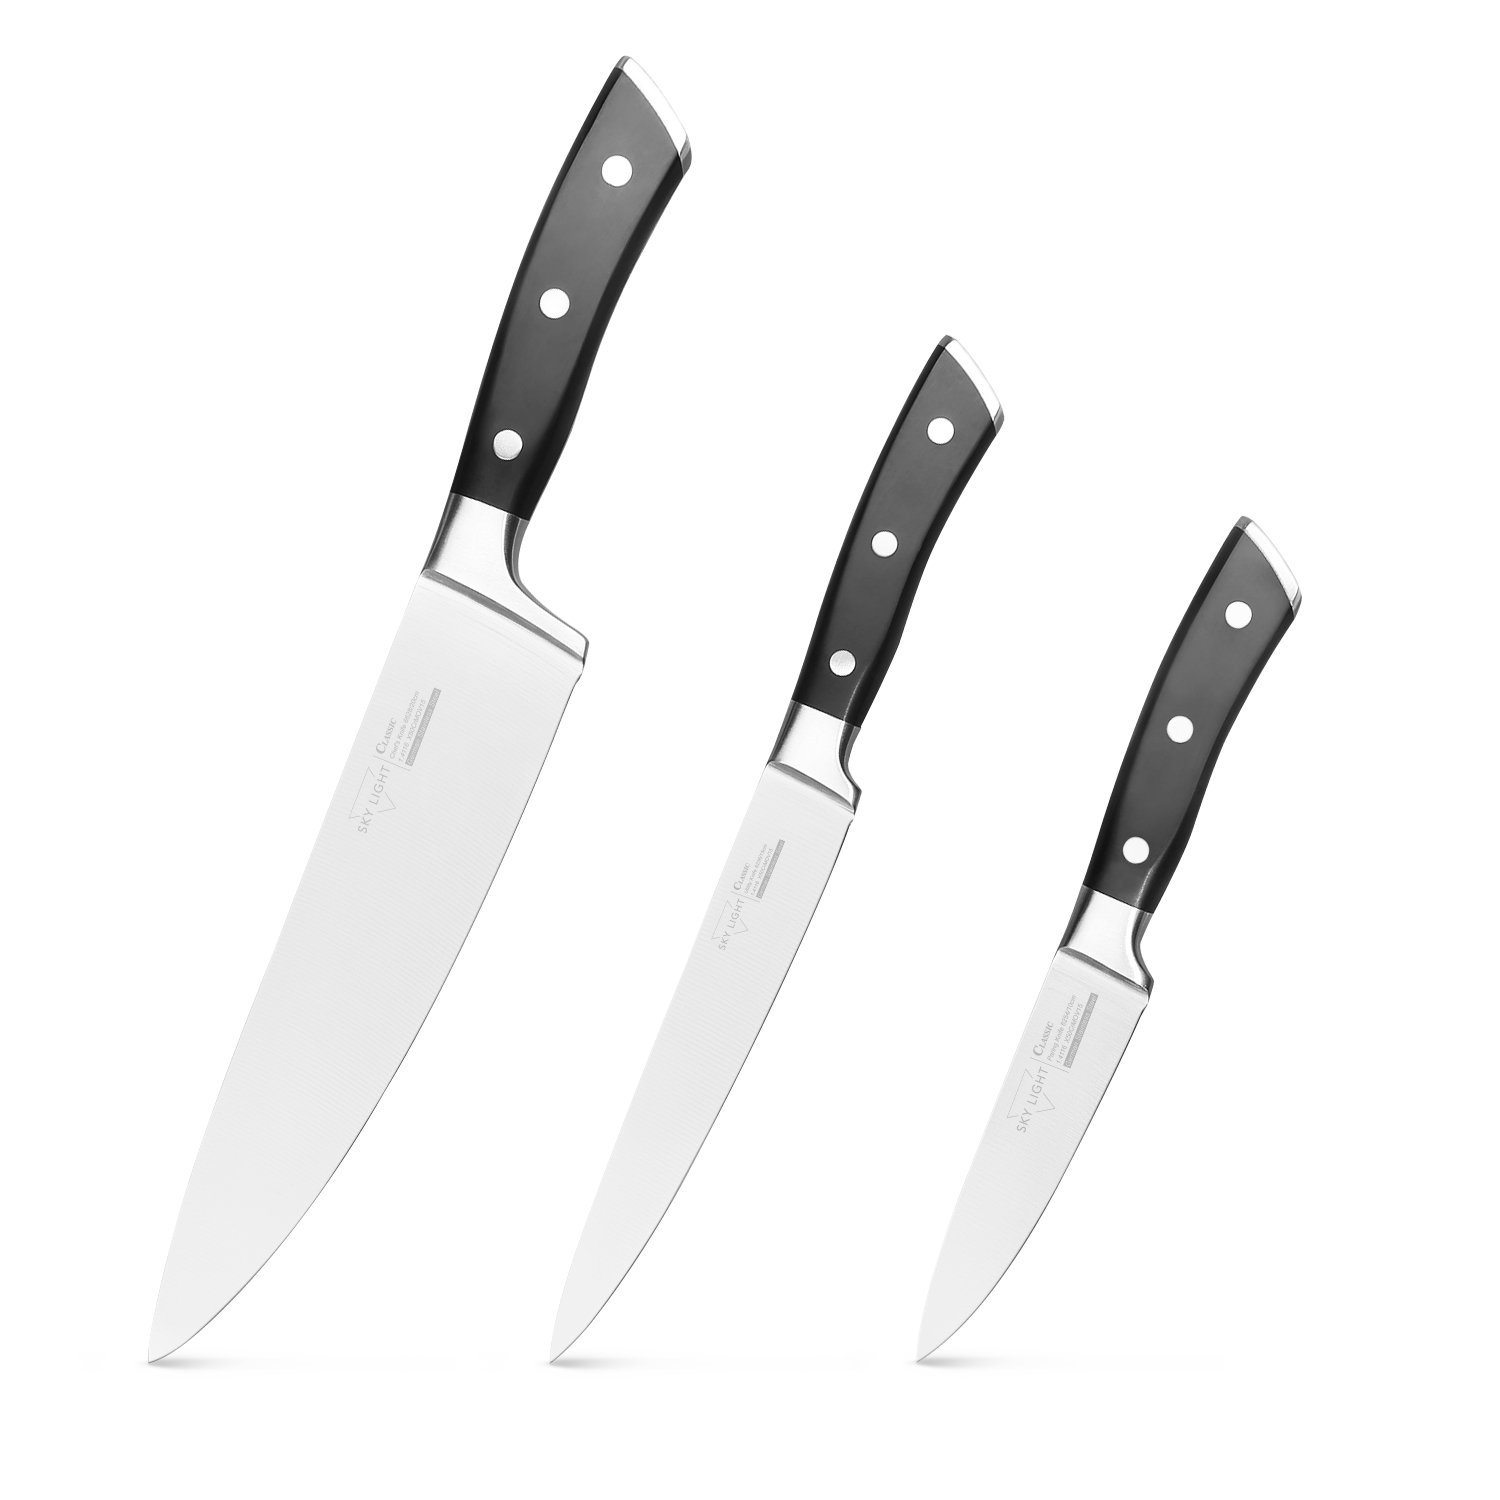 First Apartment Kitchen Checklist | Kitchen Essentials | Cooking Knives Set